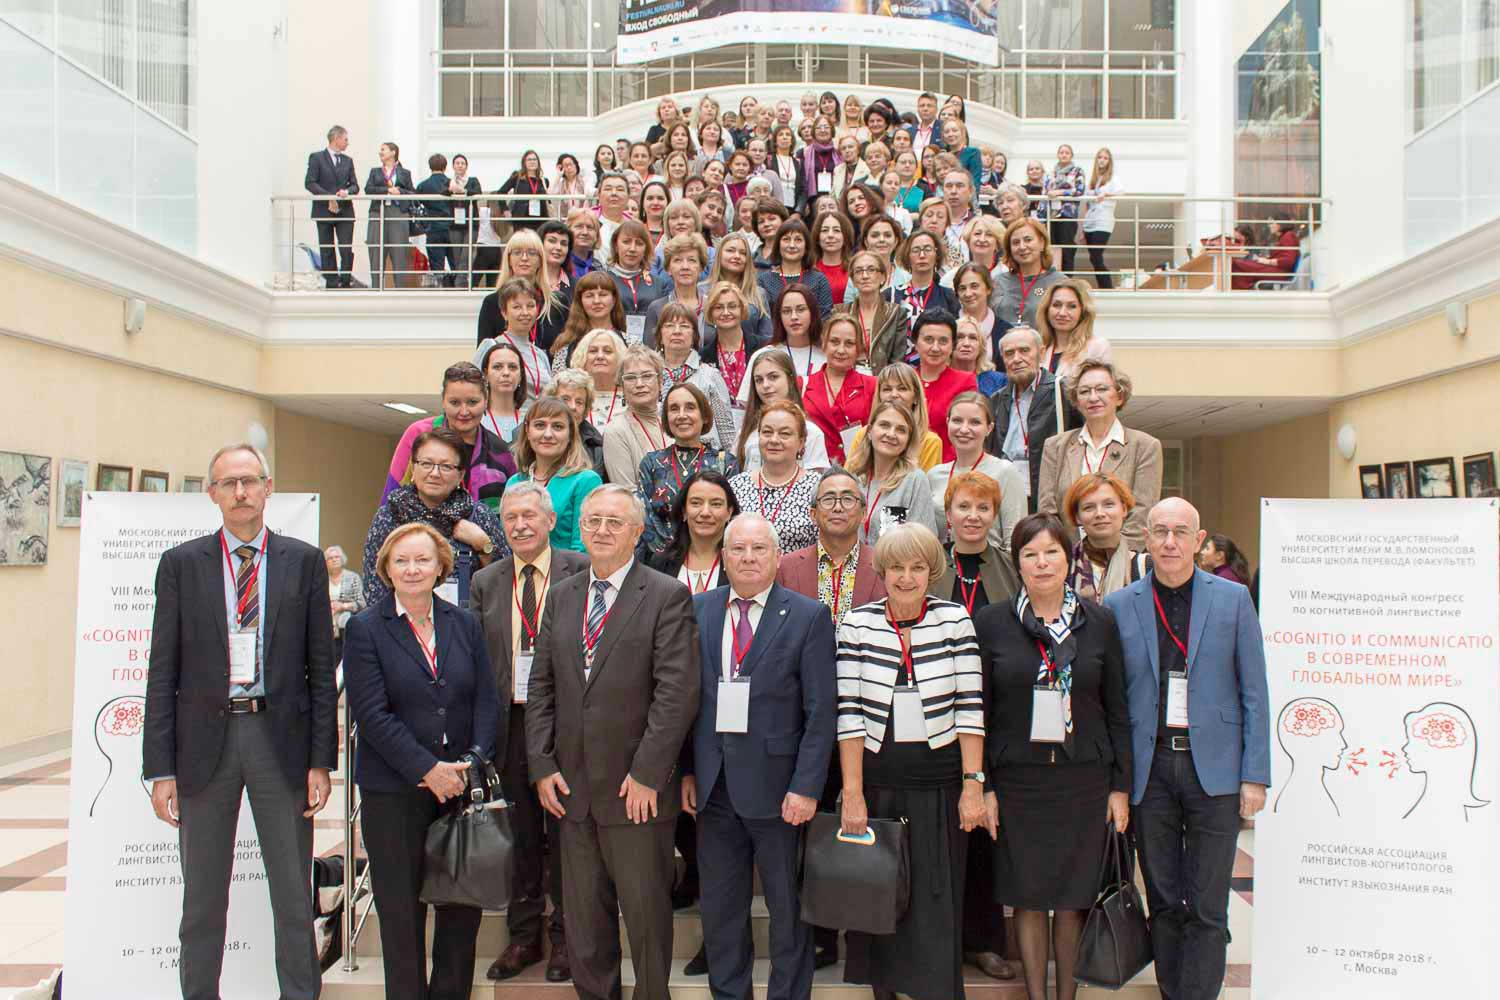 Преподаватели Мининского университета приняли участие в VIII международном конгрессе по когнитивной лингвистике «Cognitio и communicatio в современном глобальном мире»